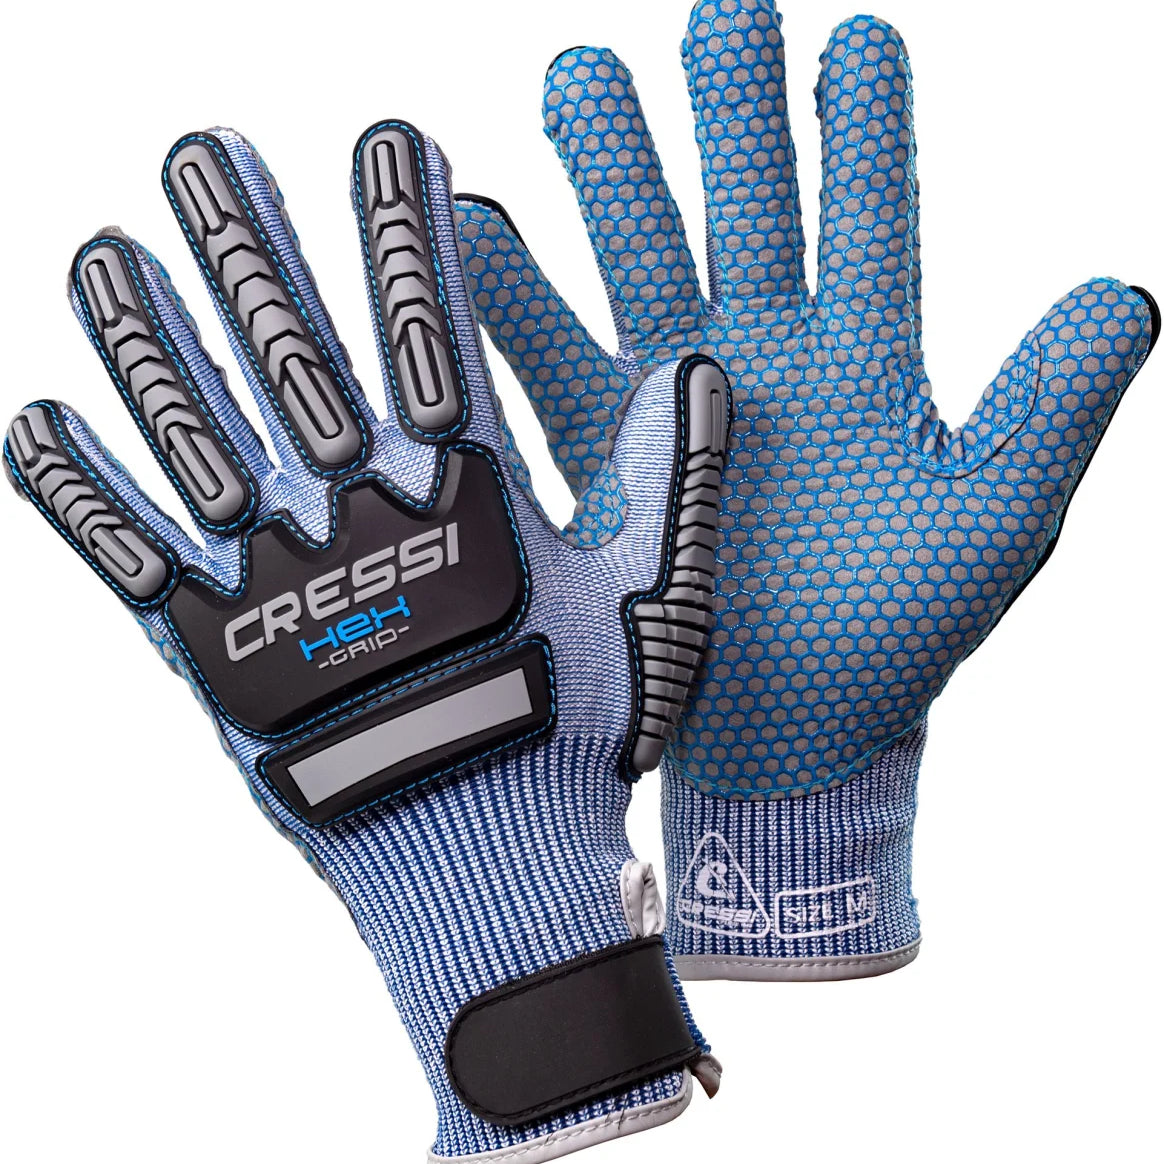 Cressi HEX Grip Gloves Blue